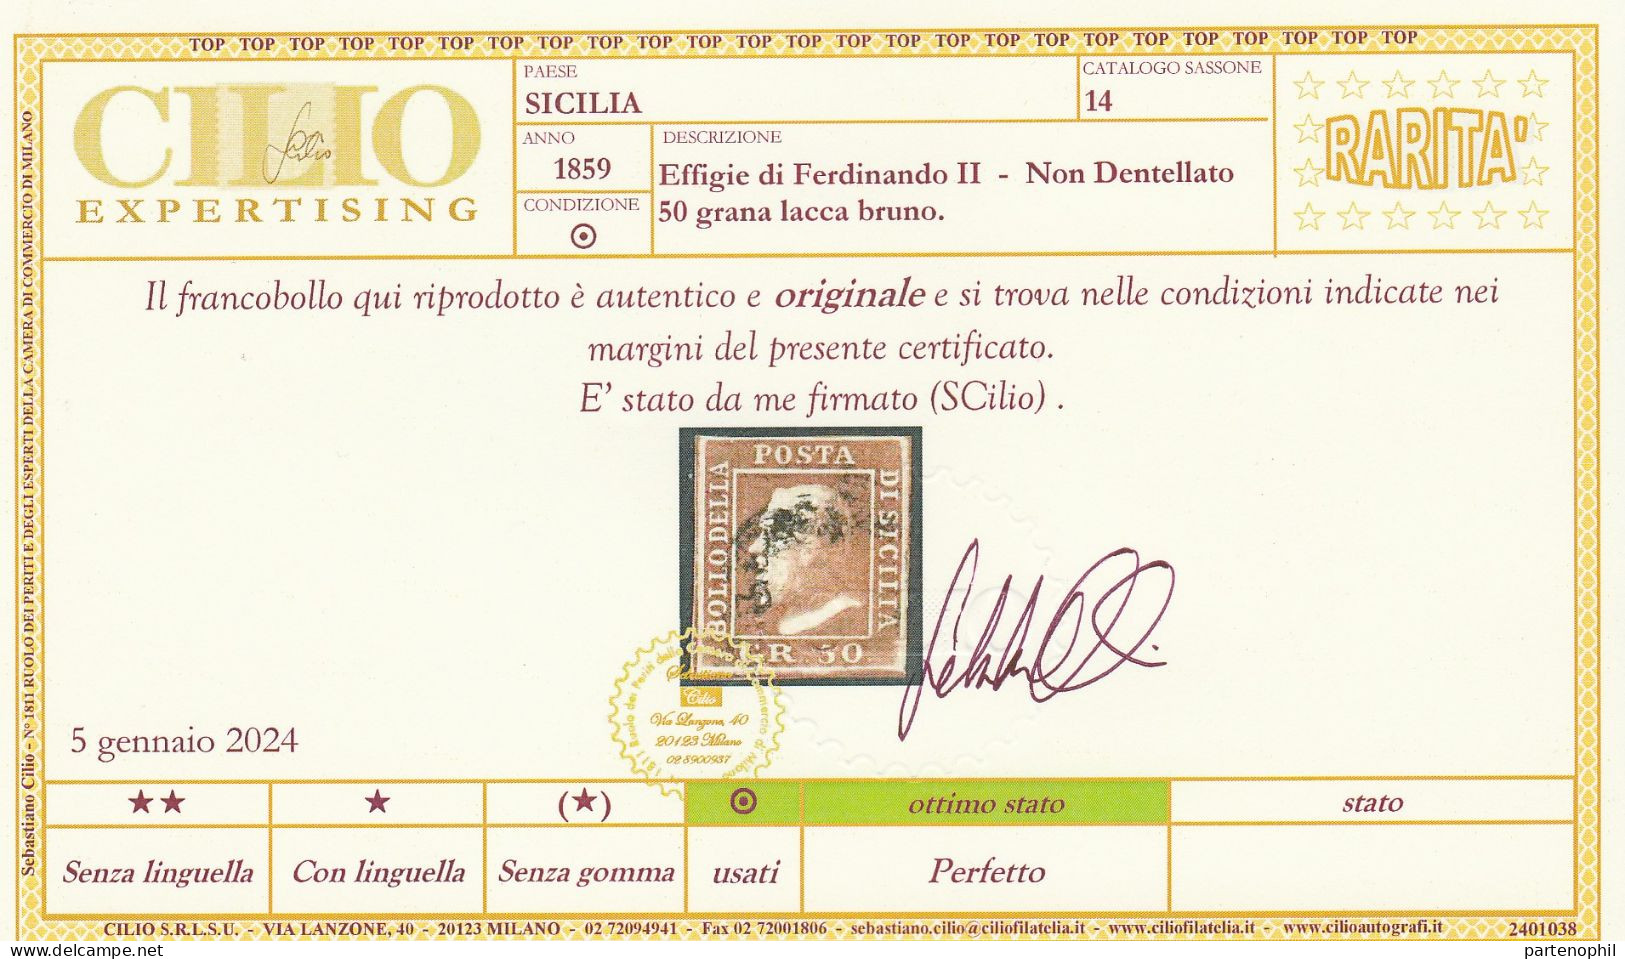 54 - Sicilia 1859 - 50 Gr. Lacca Bruno N. 14. Firmato E. E A. Diena, Oliva. Cert. Cilio. Cat. € 12000,00. Molto Bello, - Sicilia